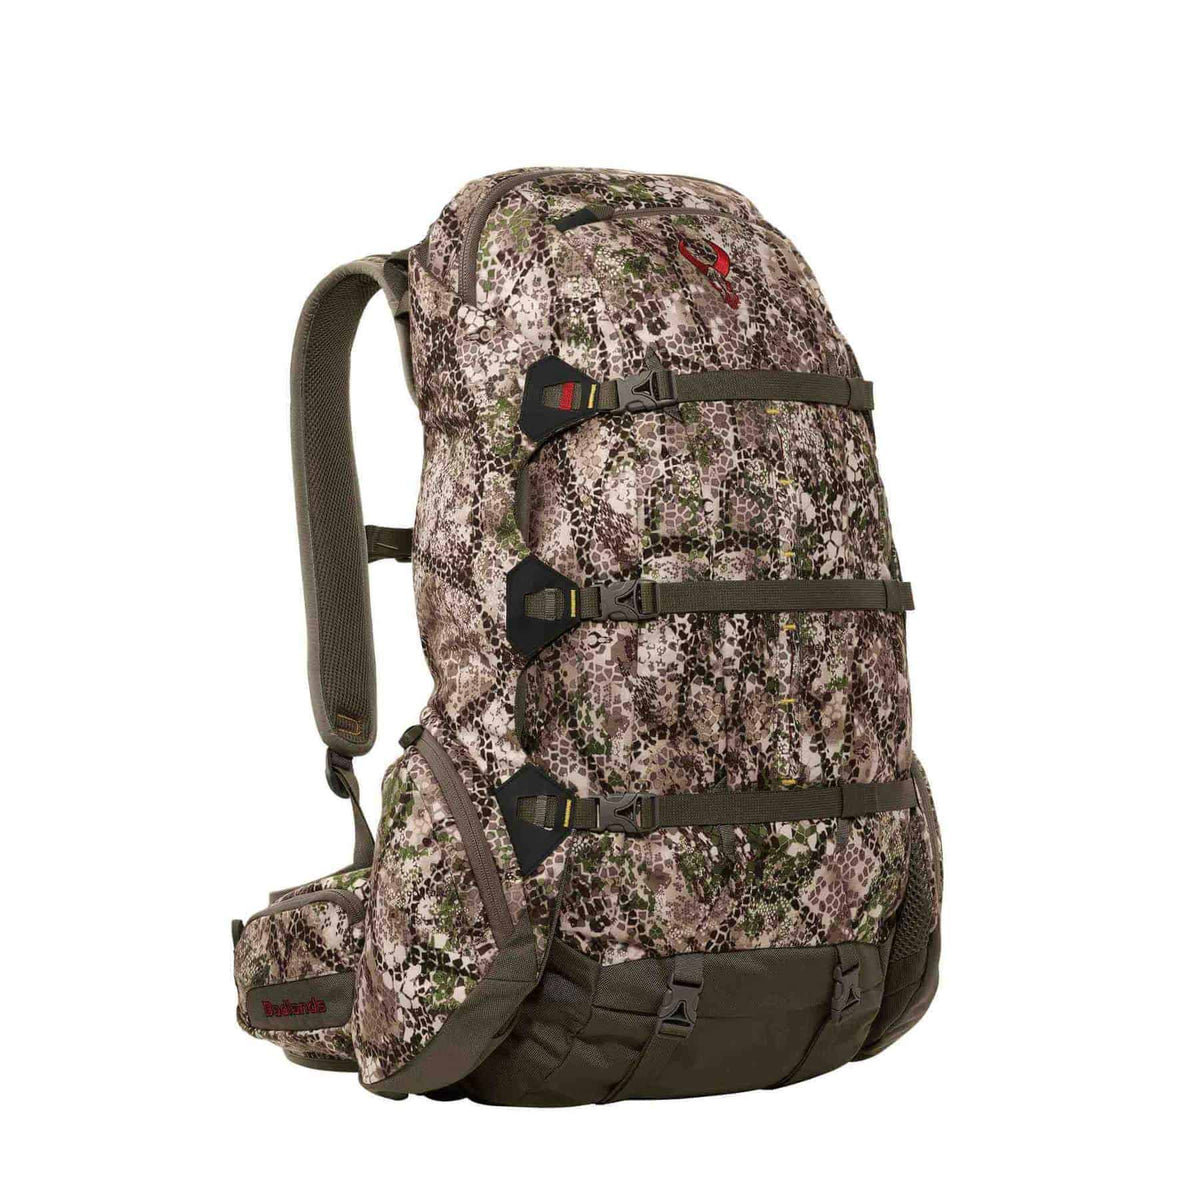 Badlands Packs 2200 Hunting Backpack 2020 Model Approach Camo Back